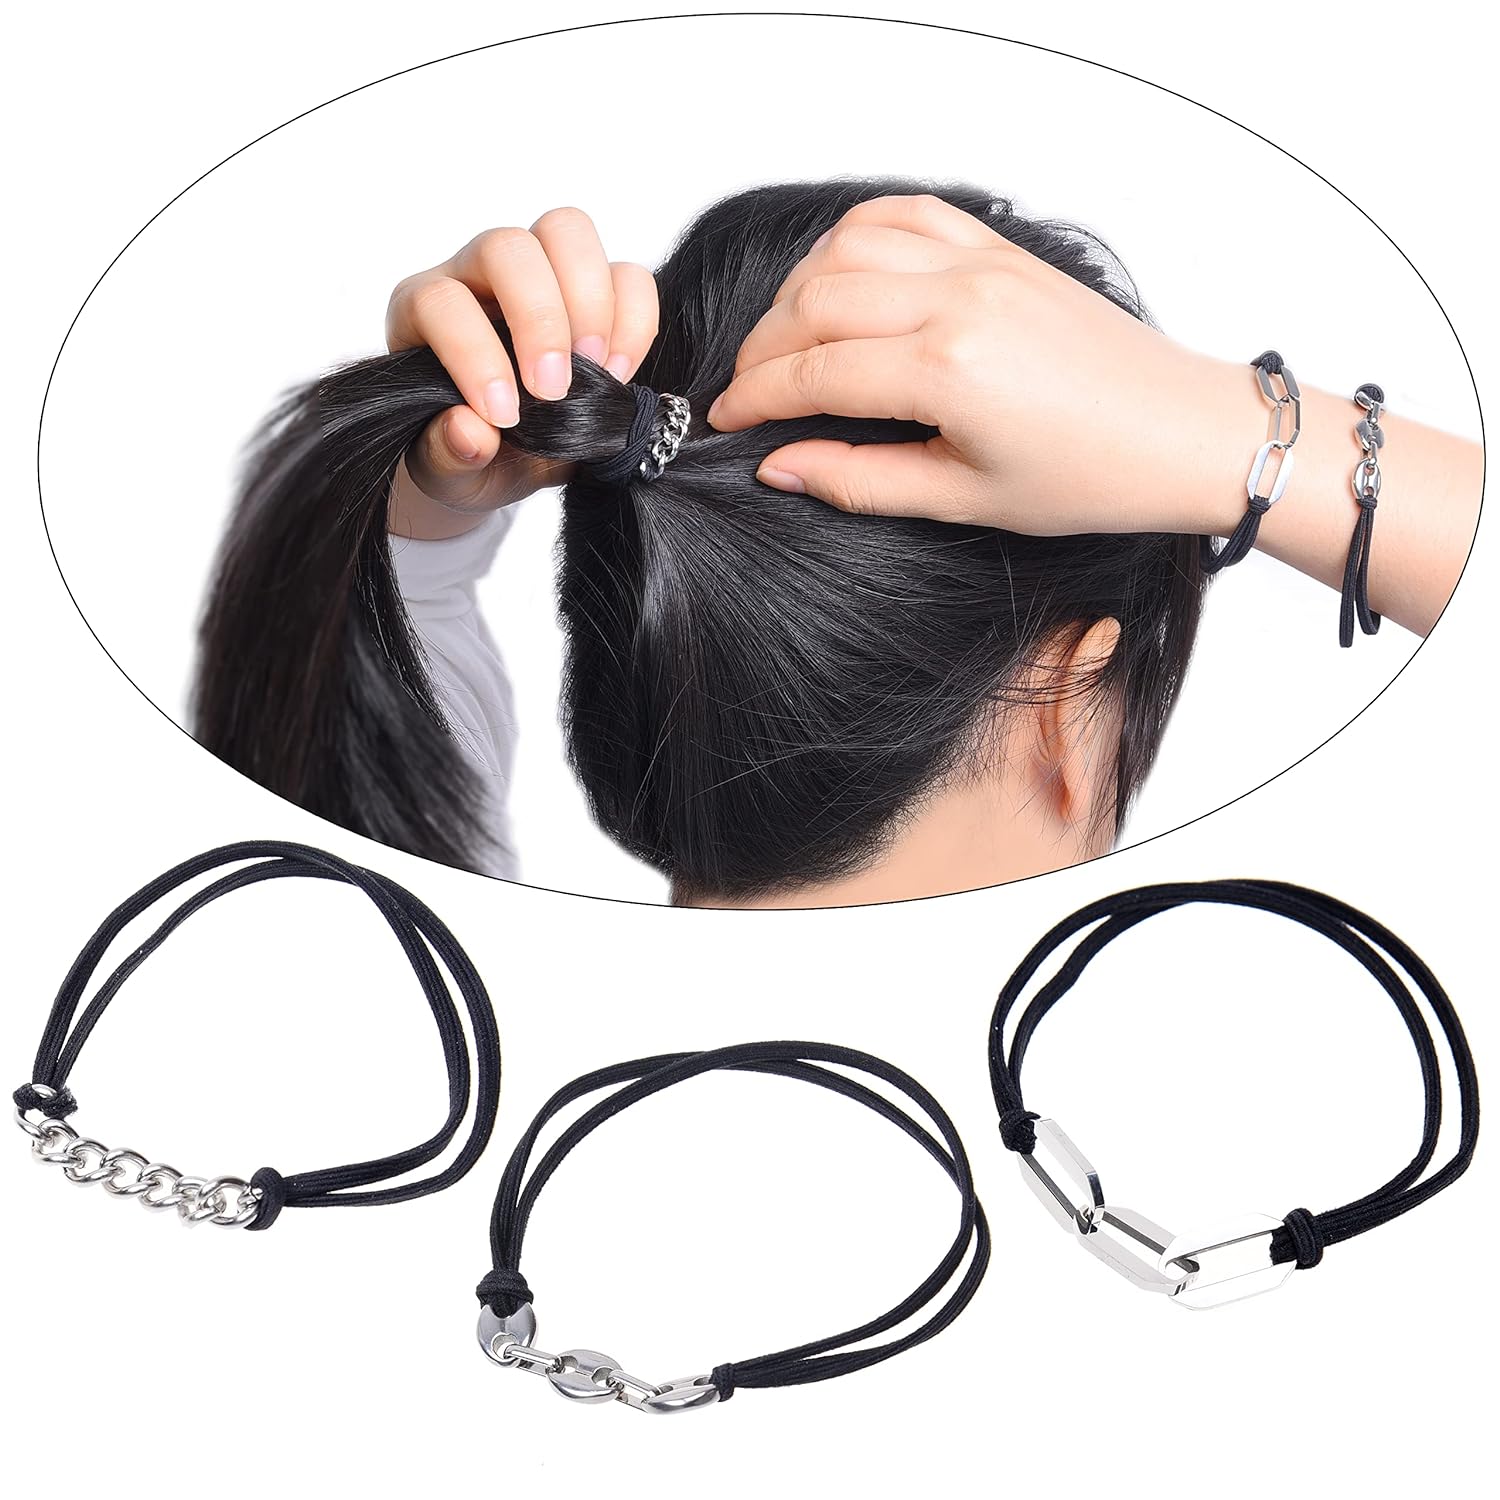 Eco-Fused 3x Bracelet Hair Ties Review